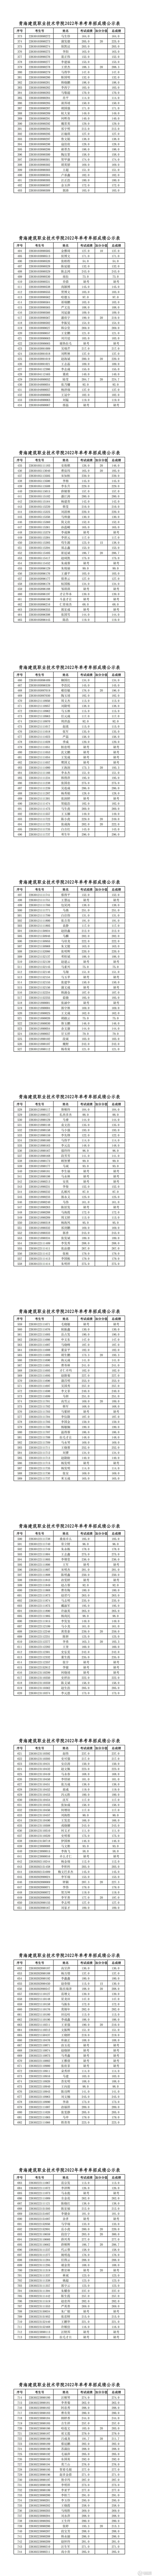 青海建筑职业技术学院2022年单考单招成绩公示表_01.jpg